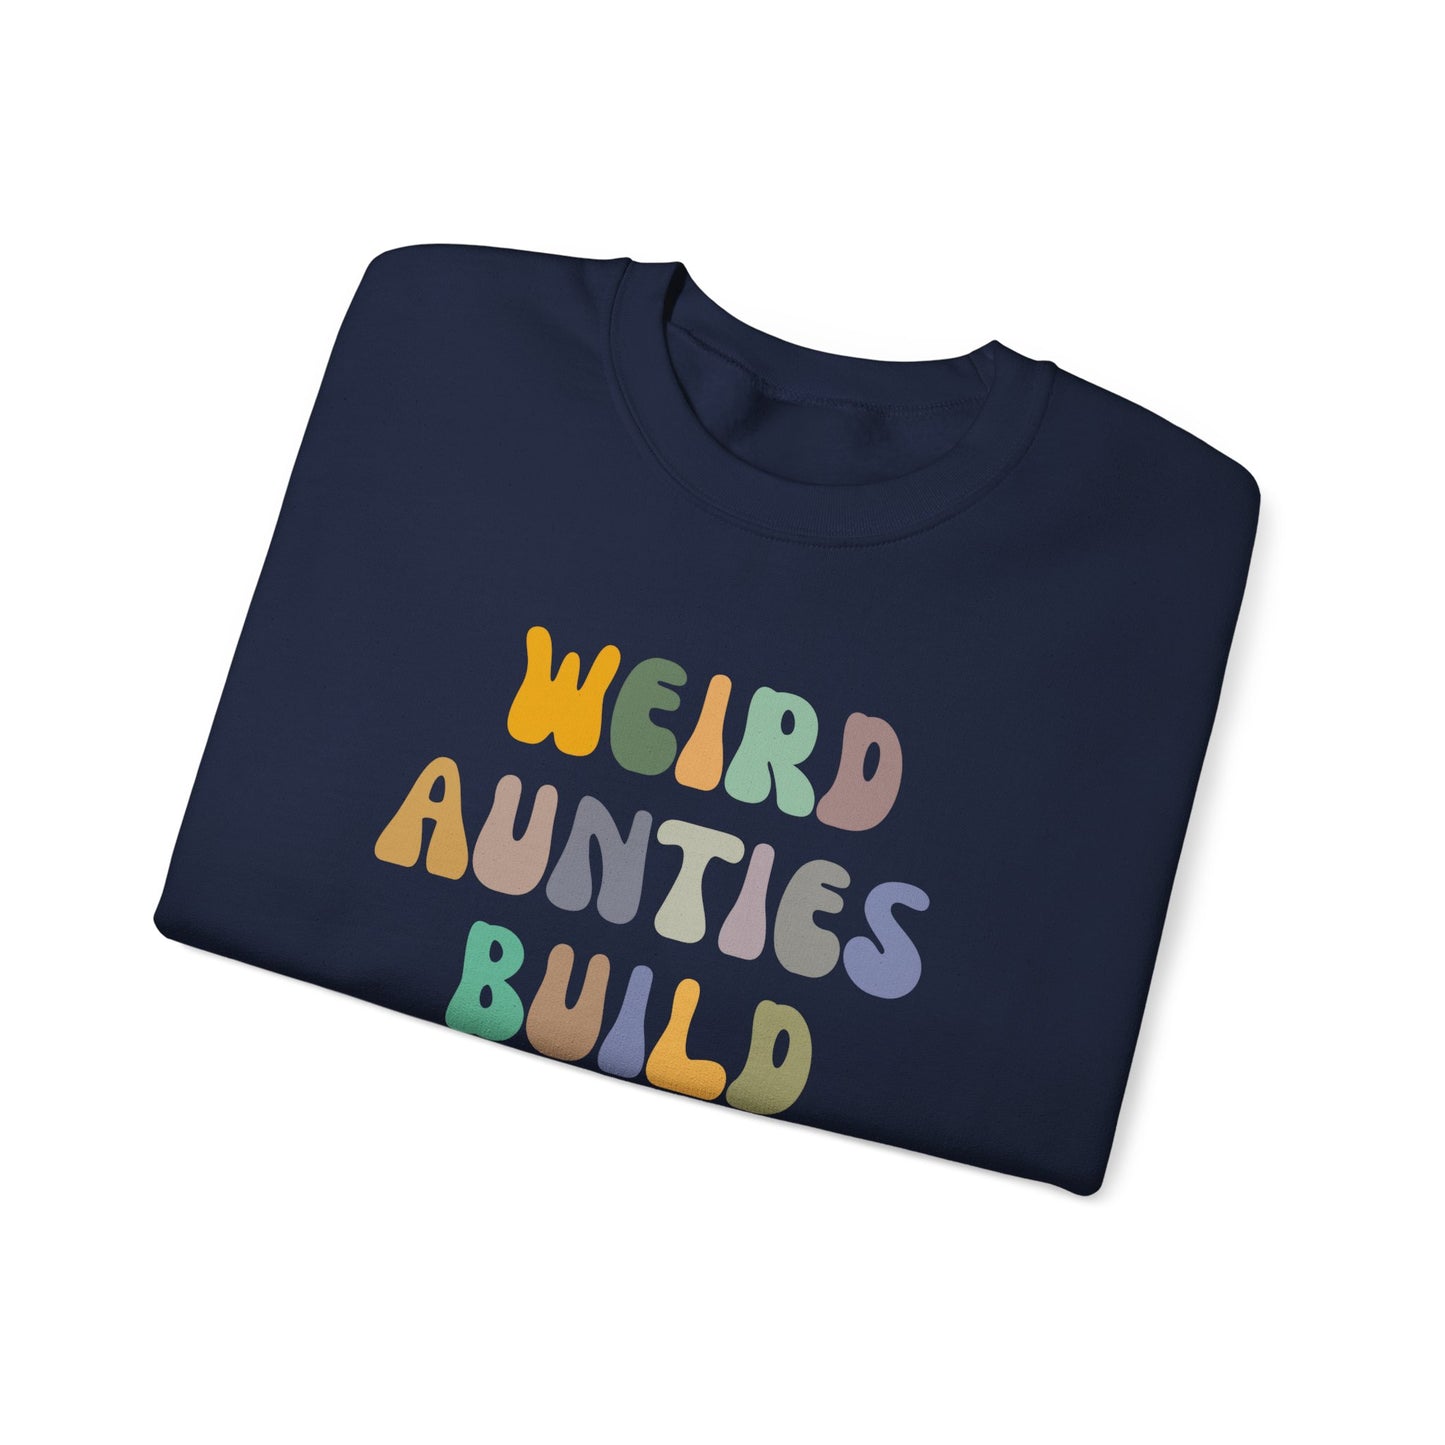 Weird Aunties Build Character Sweatshirt, Retro Auntie Sweatshirt, Best Auntie Sweatshirt from Mom, Gift for Best Auntie, S1098